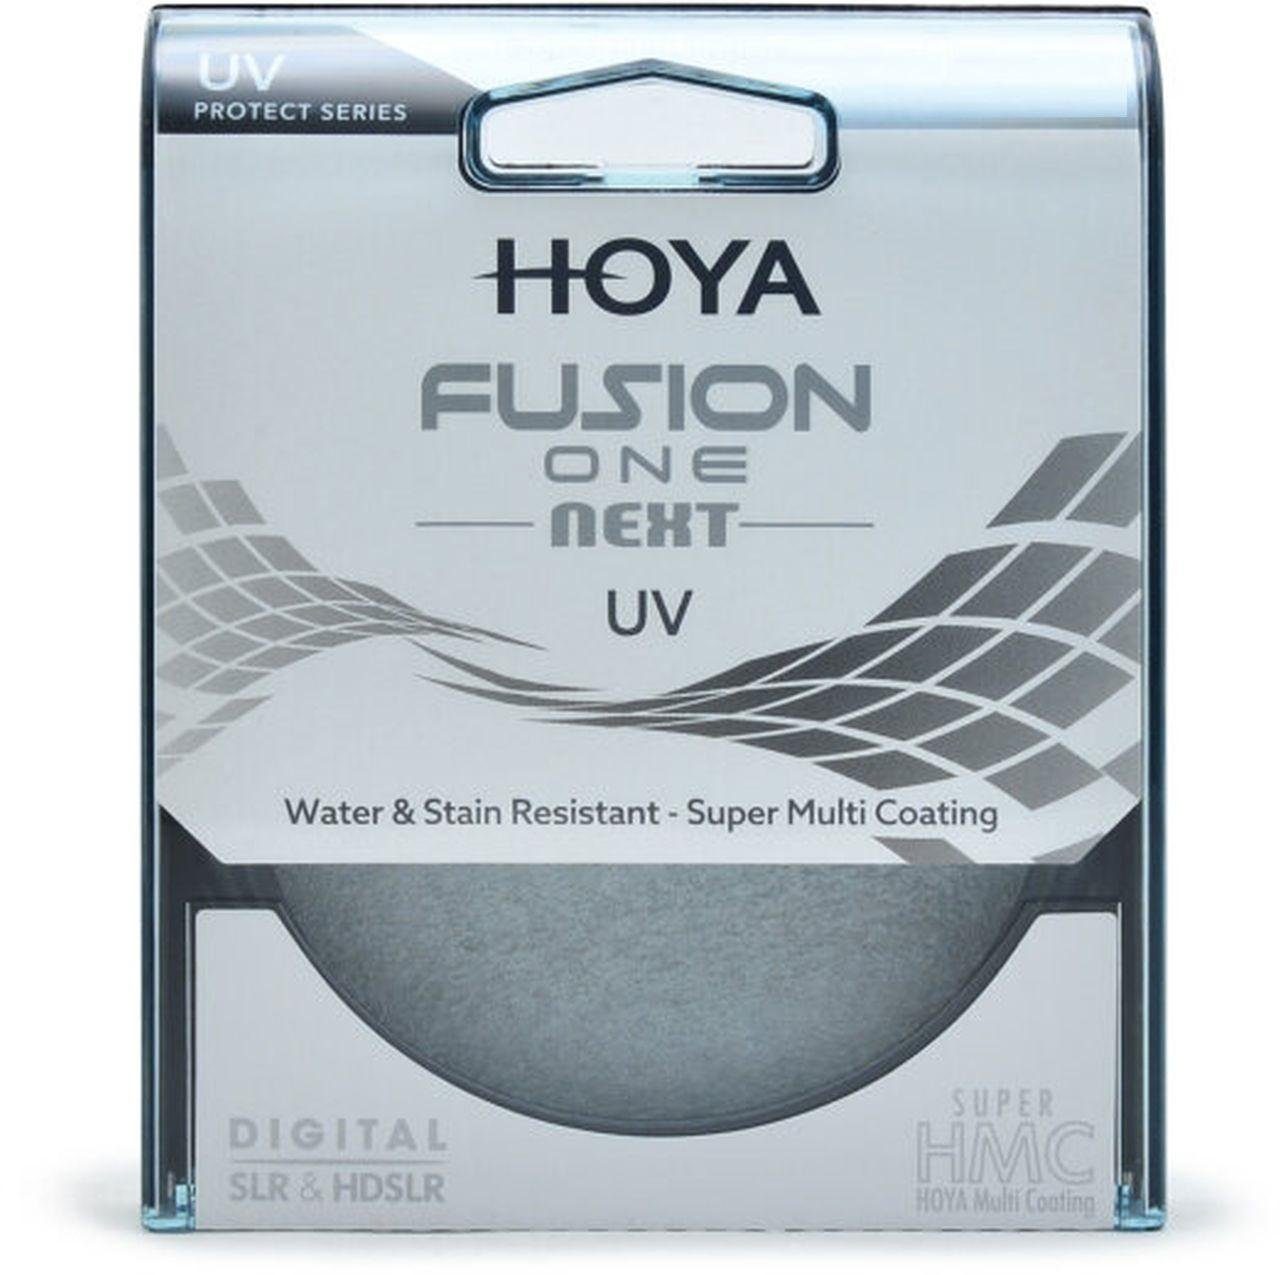 Hoya Fusion ONE Next UV-Filter 43mm Objektivzubehör